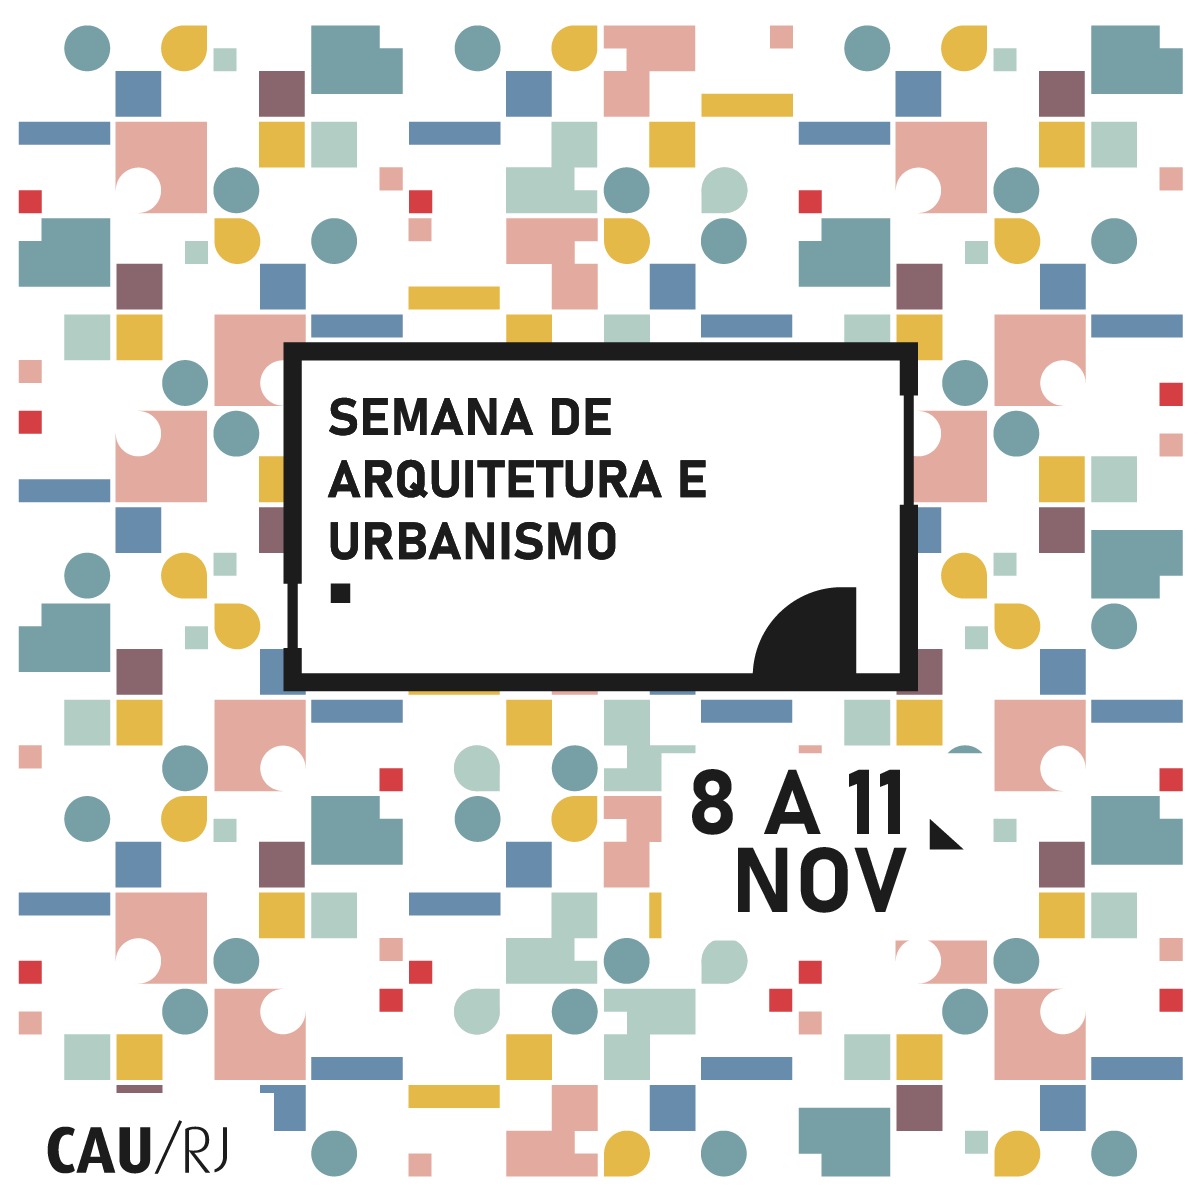 CAU/RJ realiza Semana de Arquitetura e Urbanismo de 8 a 11 de novembro